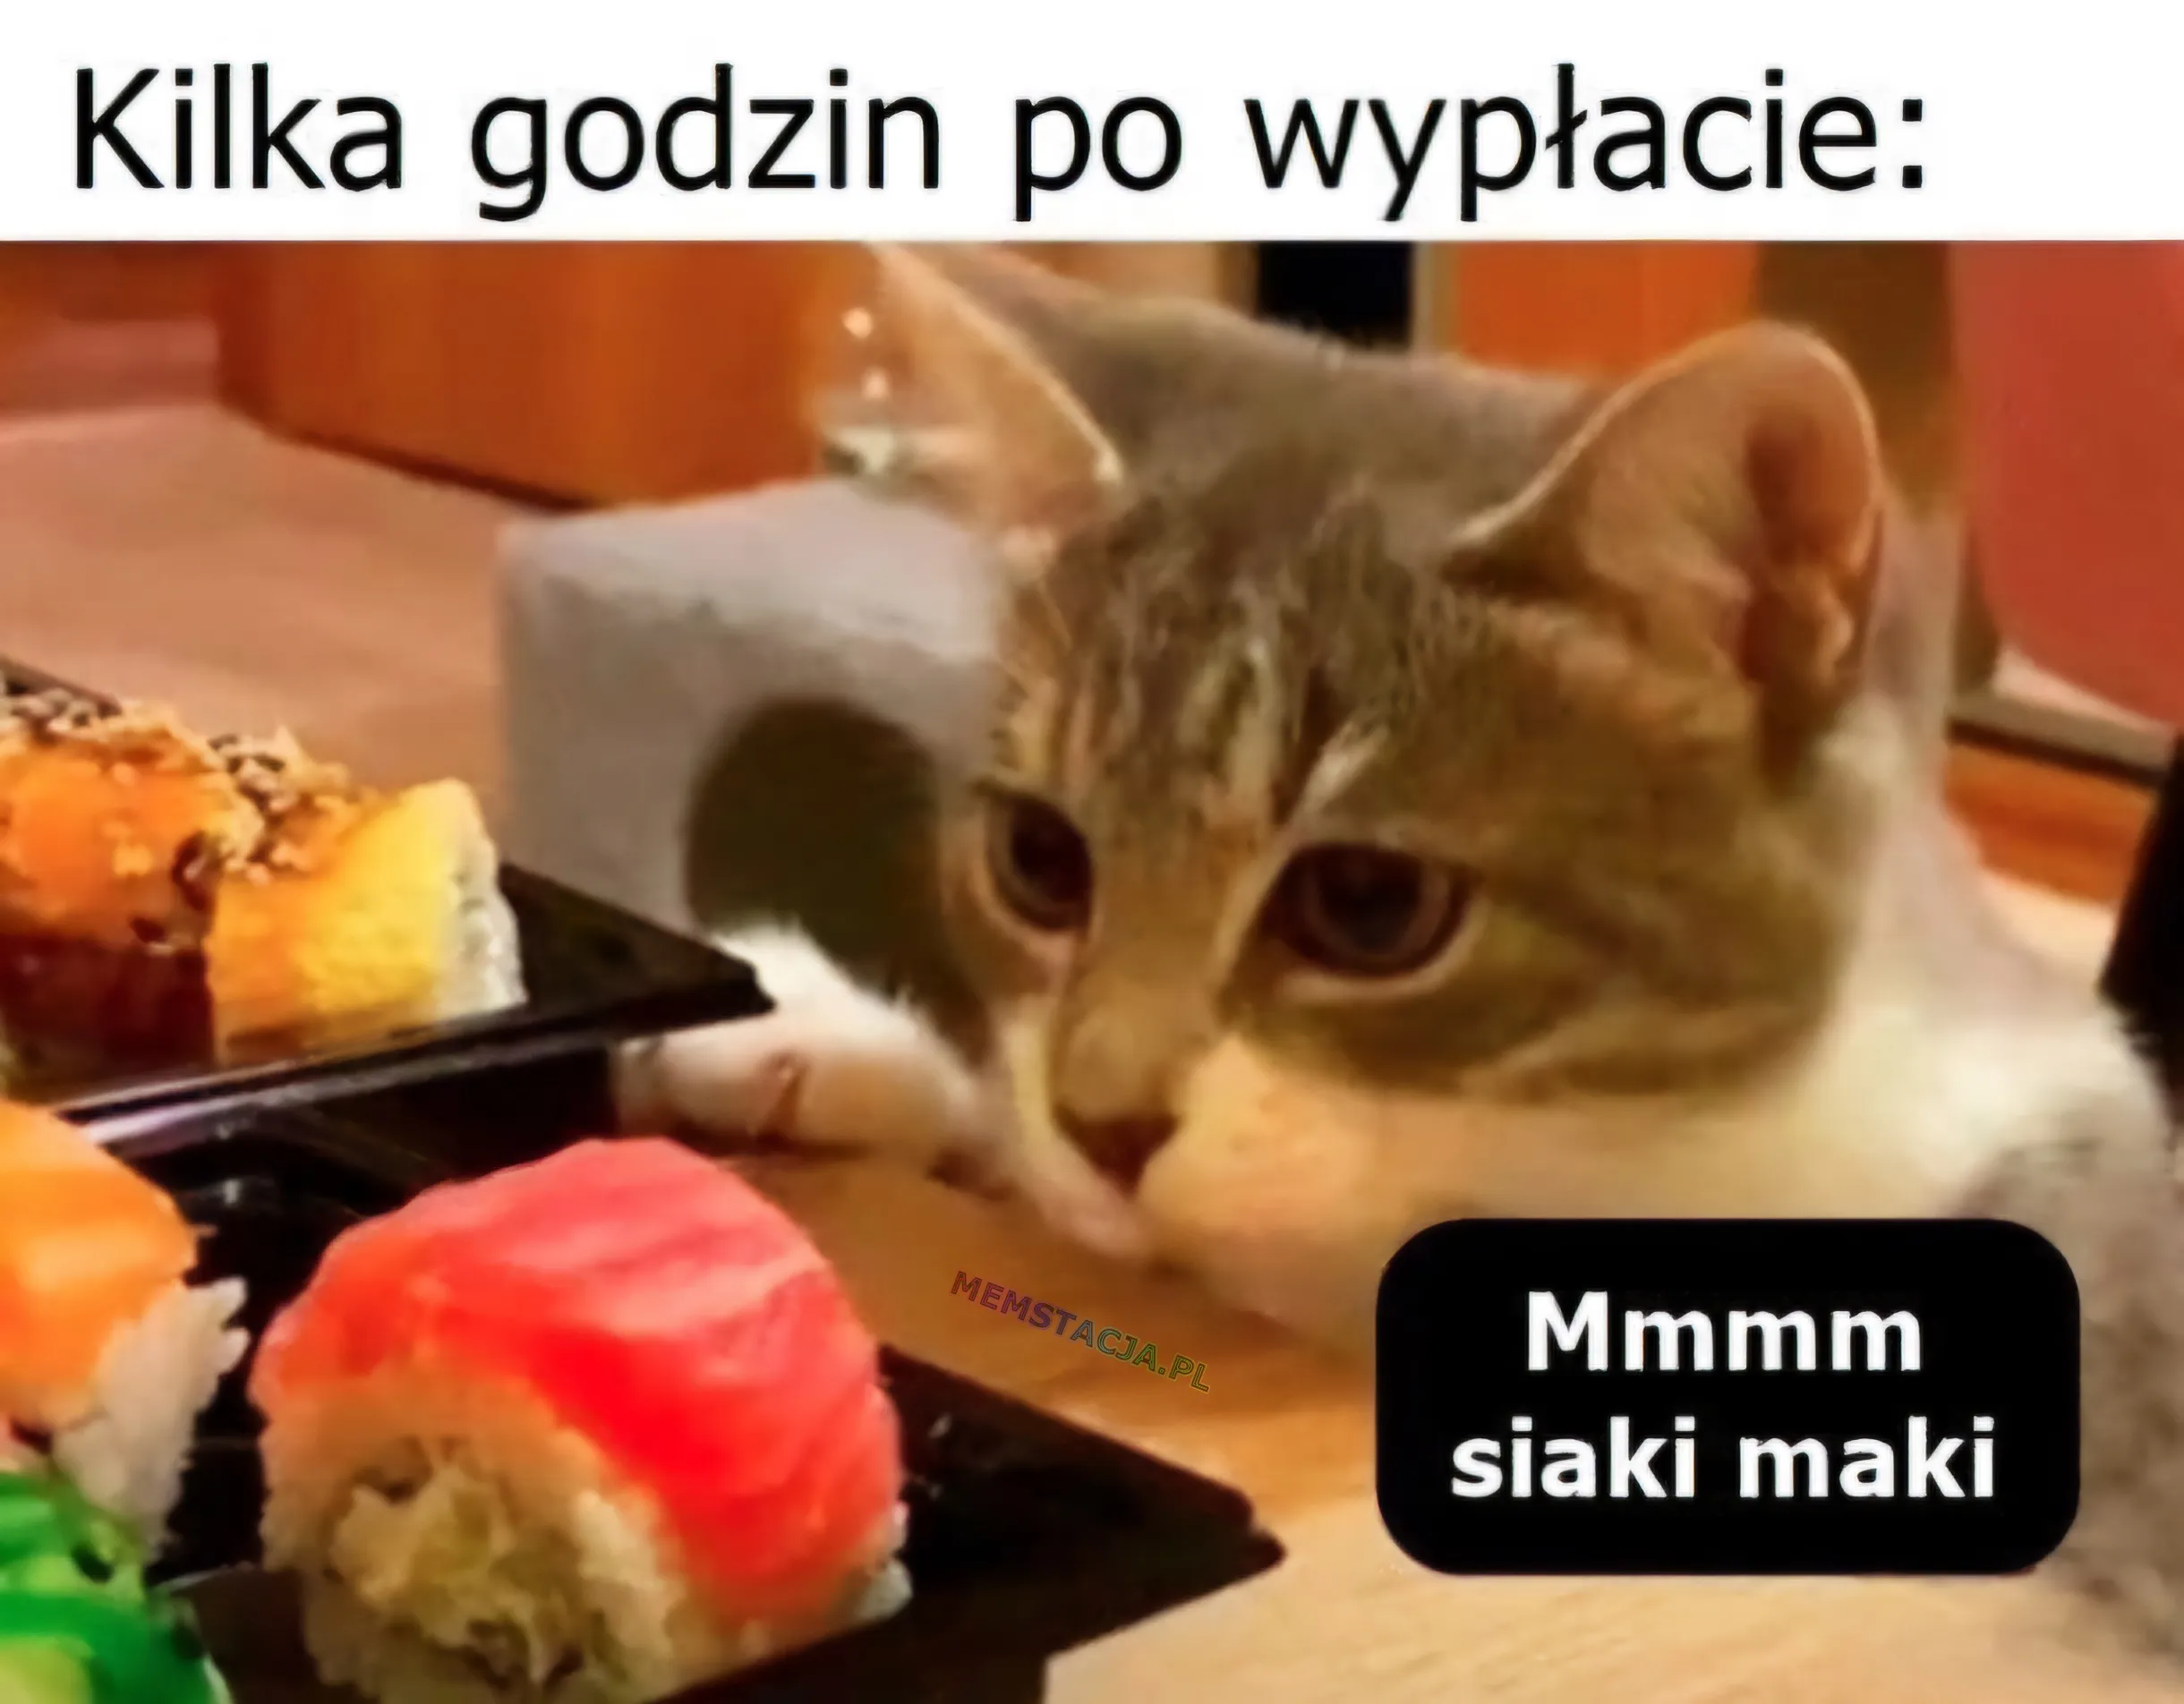 Kilka godzin po wypłacie: Zdjęcie kota przy stole pełnym sushi, ktory mówi "Mmmm siaki maki"